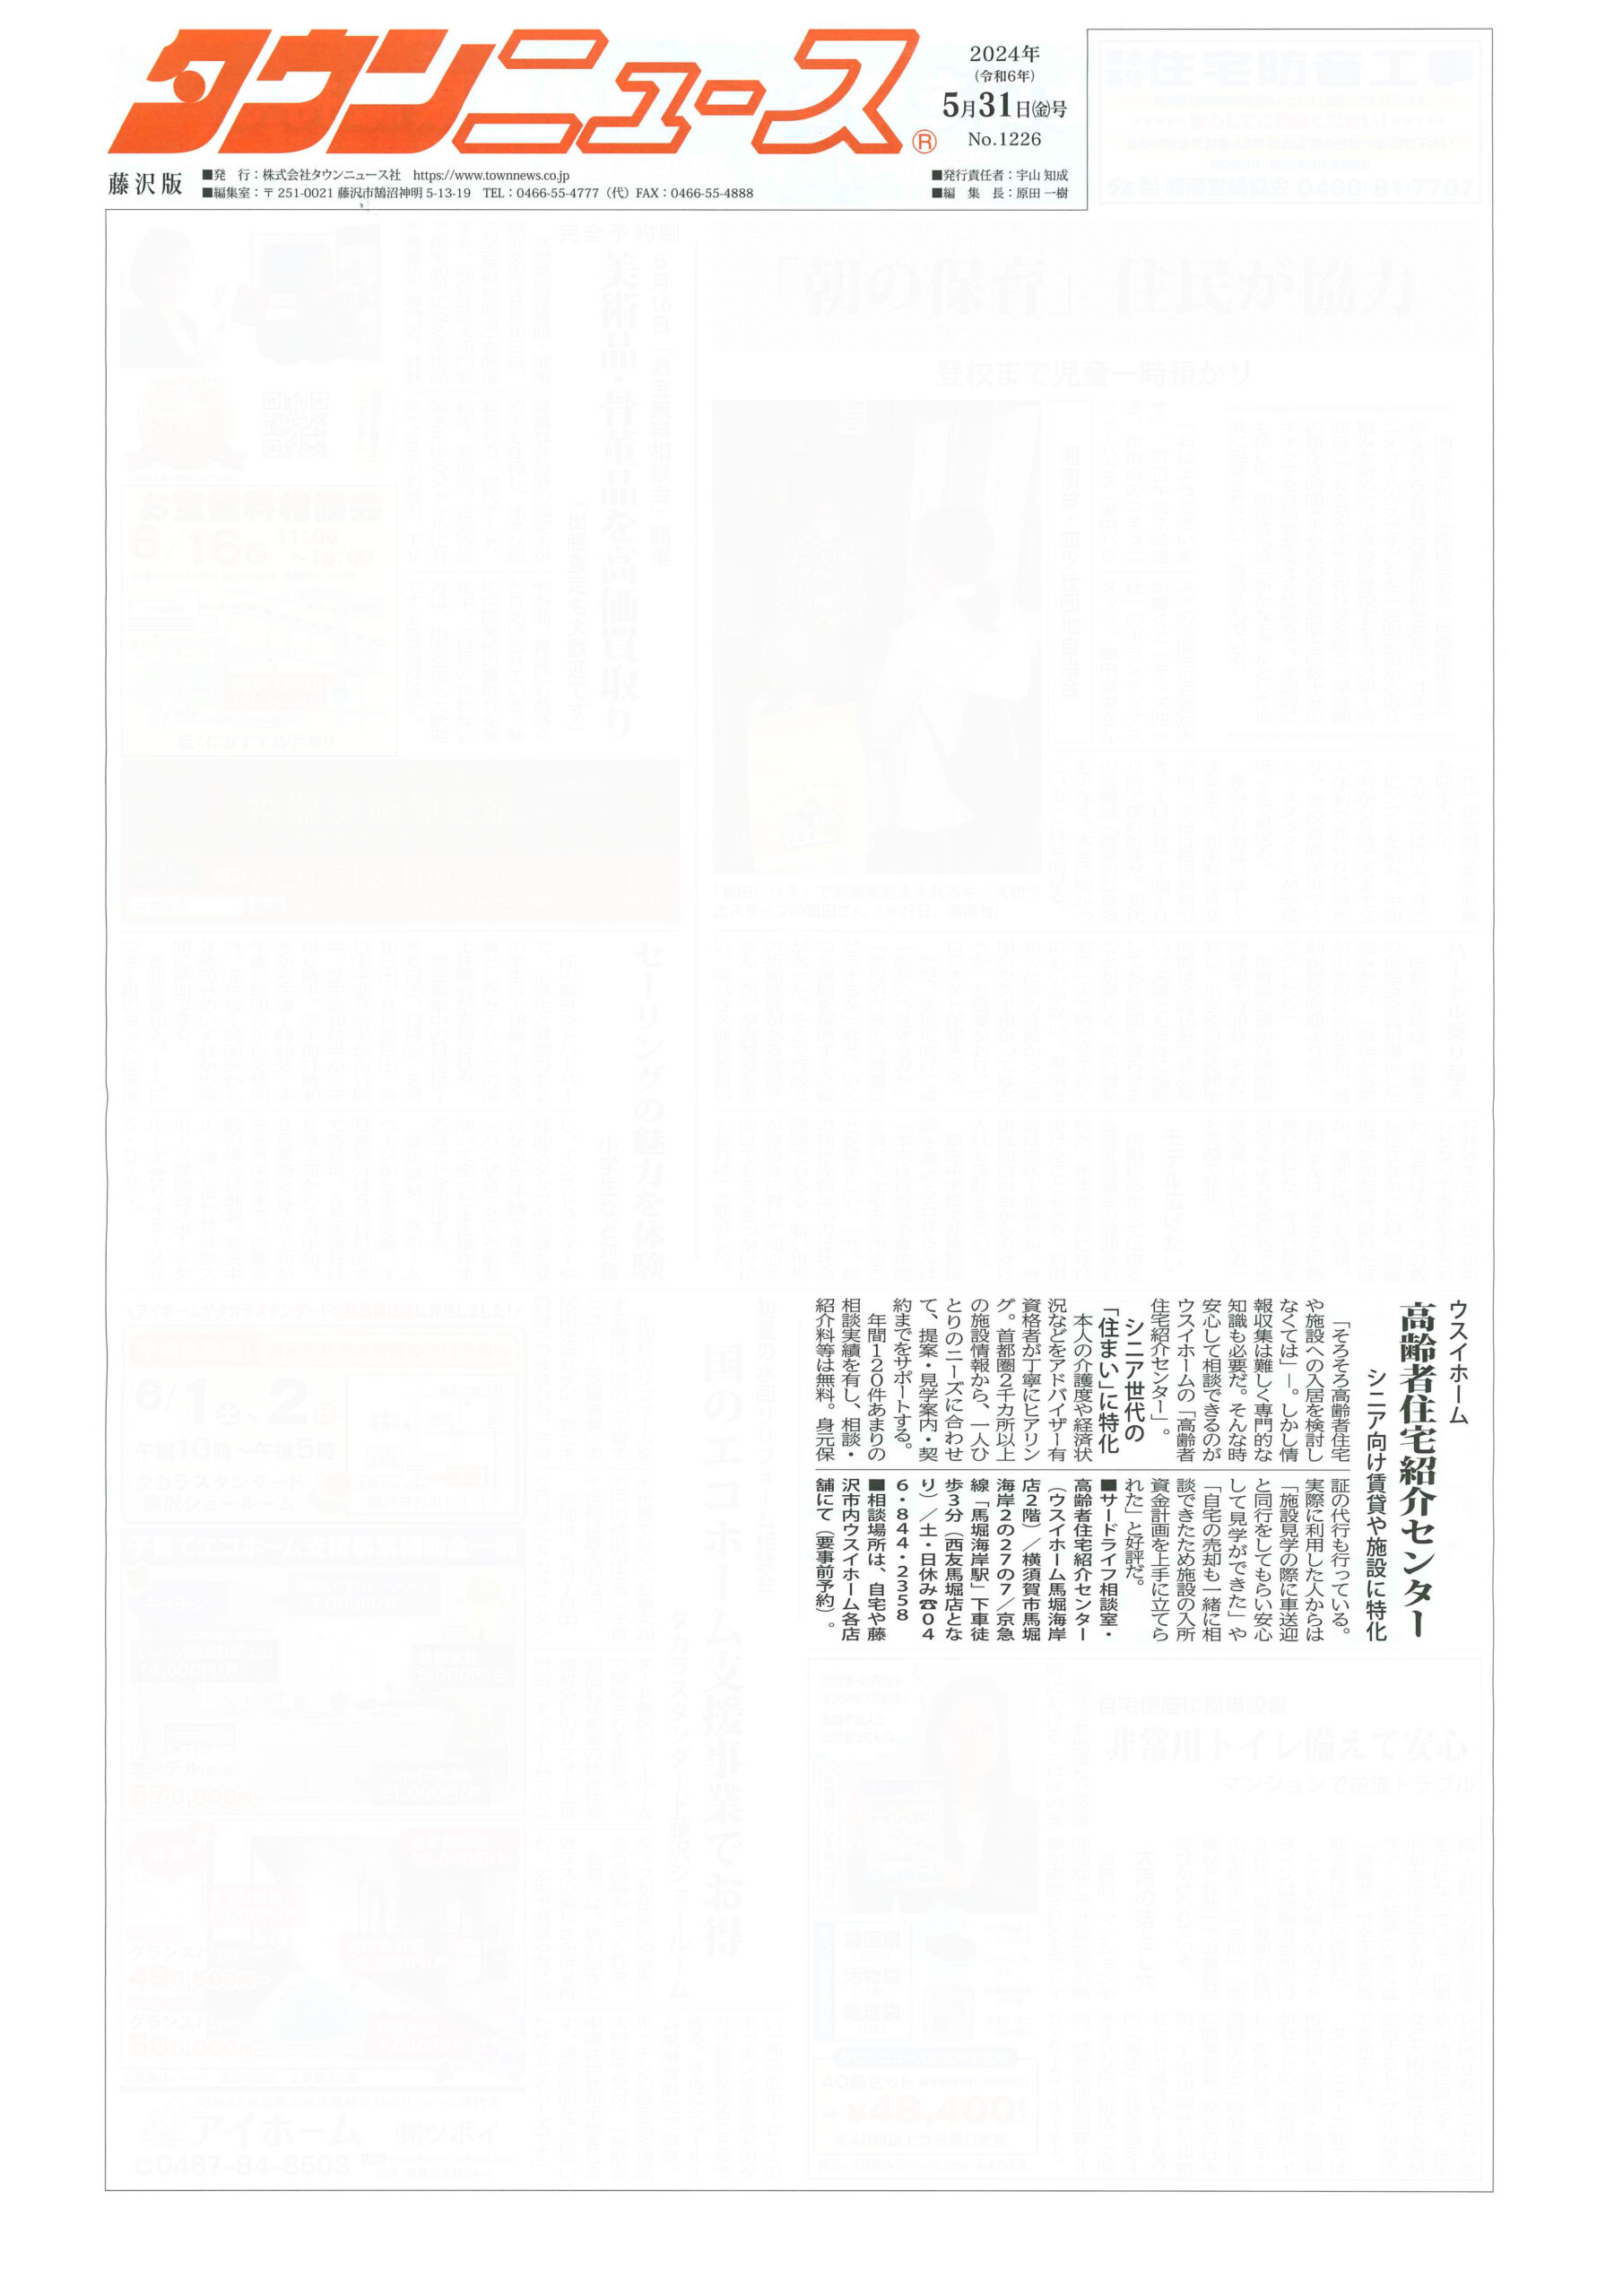 2024.05.31_タウンニュース藤沢版_ウスイホームサードライフ相談室